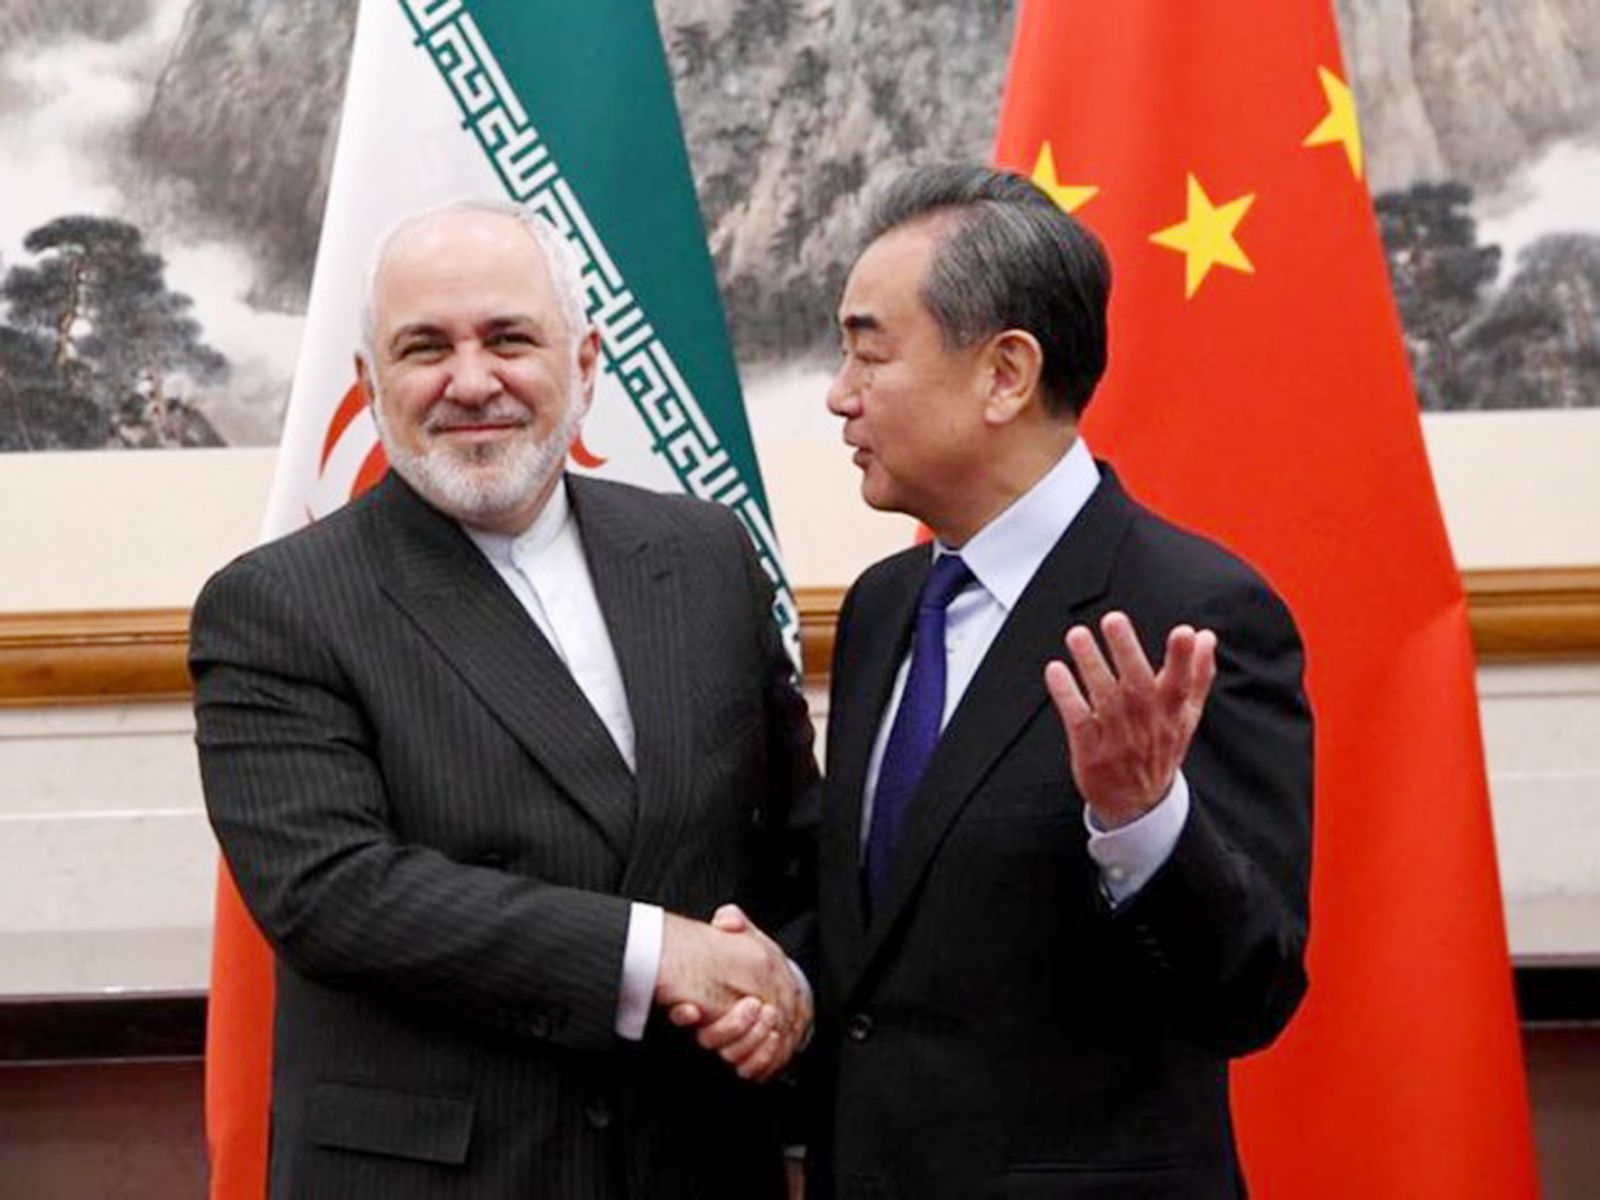 p/Chính phủ Iran đã thông qua dự thảo thỏa thuận hợp tác giữa Iran và Trung Quốc trong thời hạn 25 năm. (Bộ trưởng Ngoại giao Trung Quốc Vương Nghị (phải) đón tiếp Ngoại trưởng Iran Mohammad Javad Zarif tại Bắc Kinh ngày 31/12/2019. Ảnh: Xinhua)